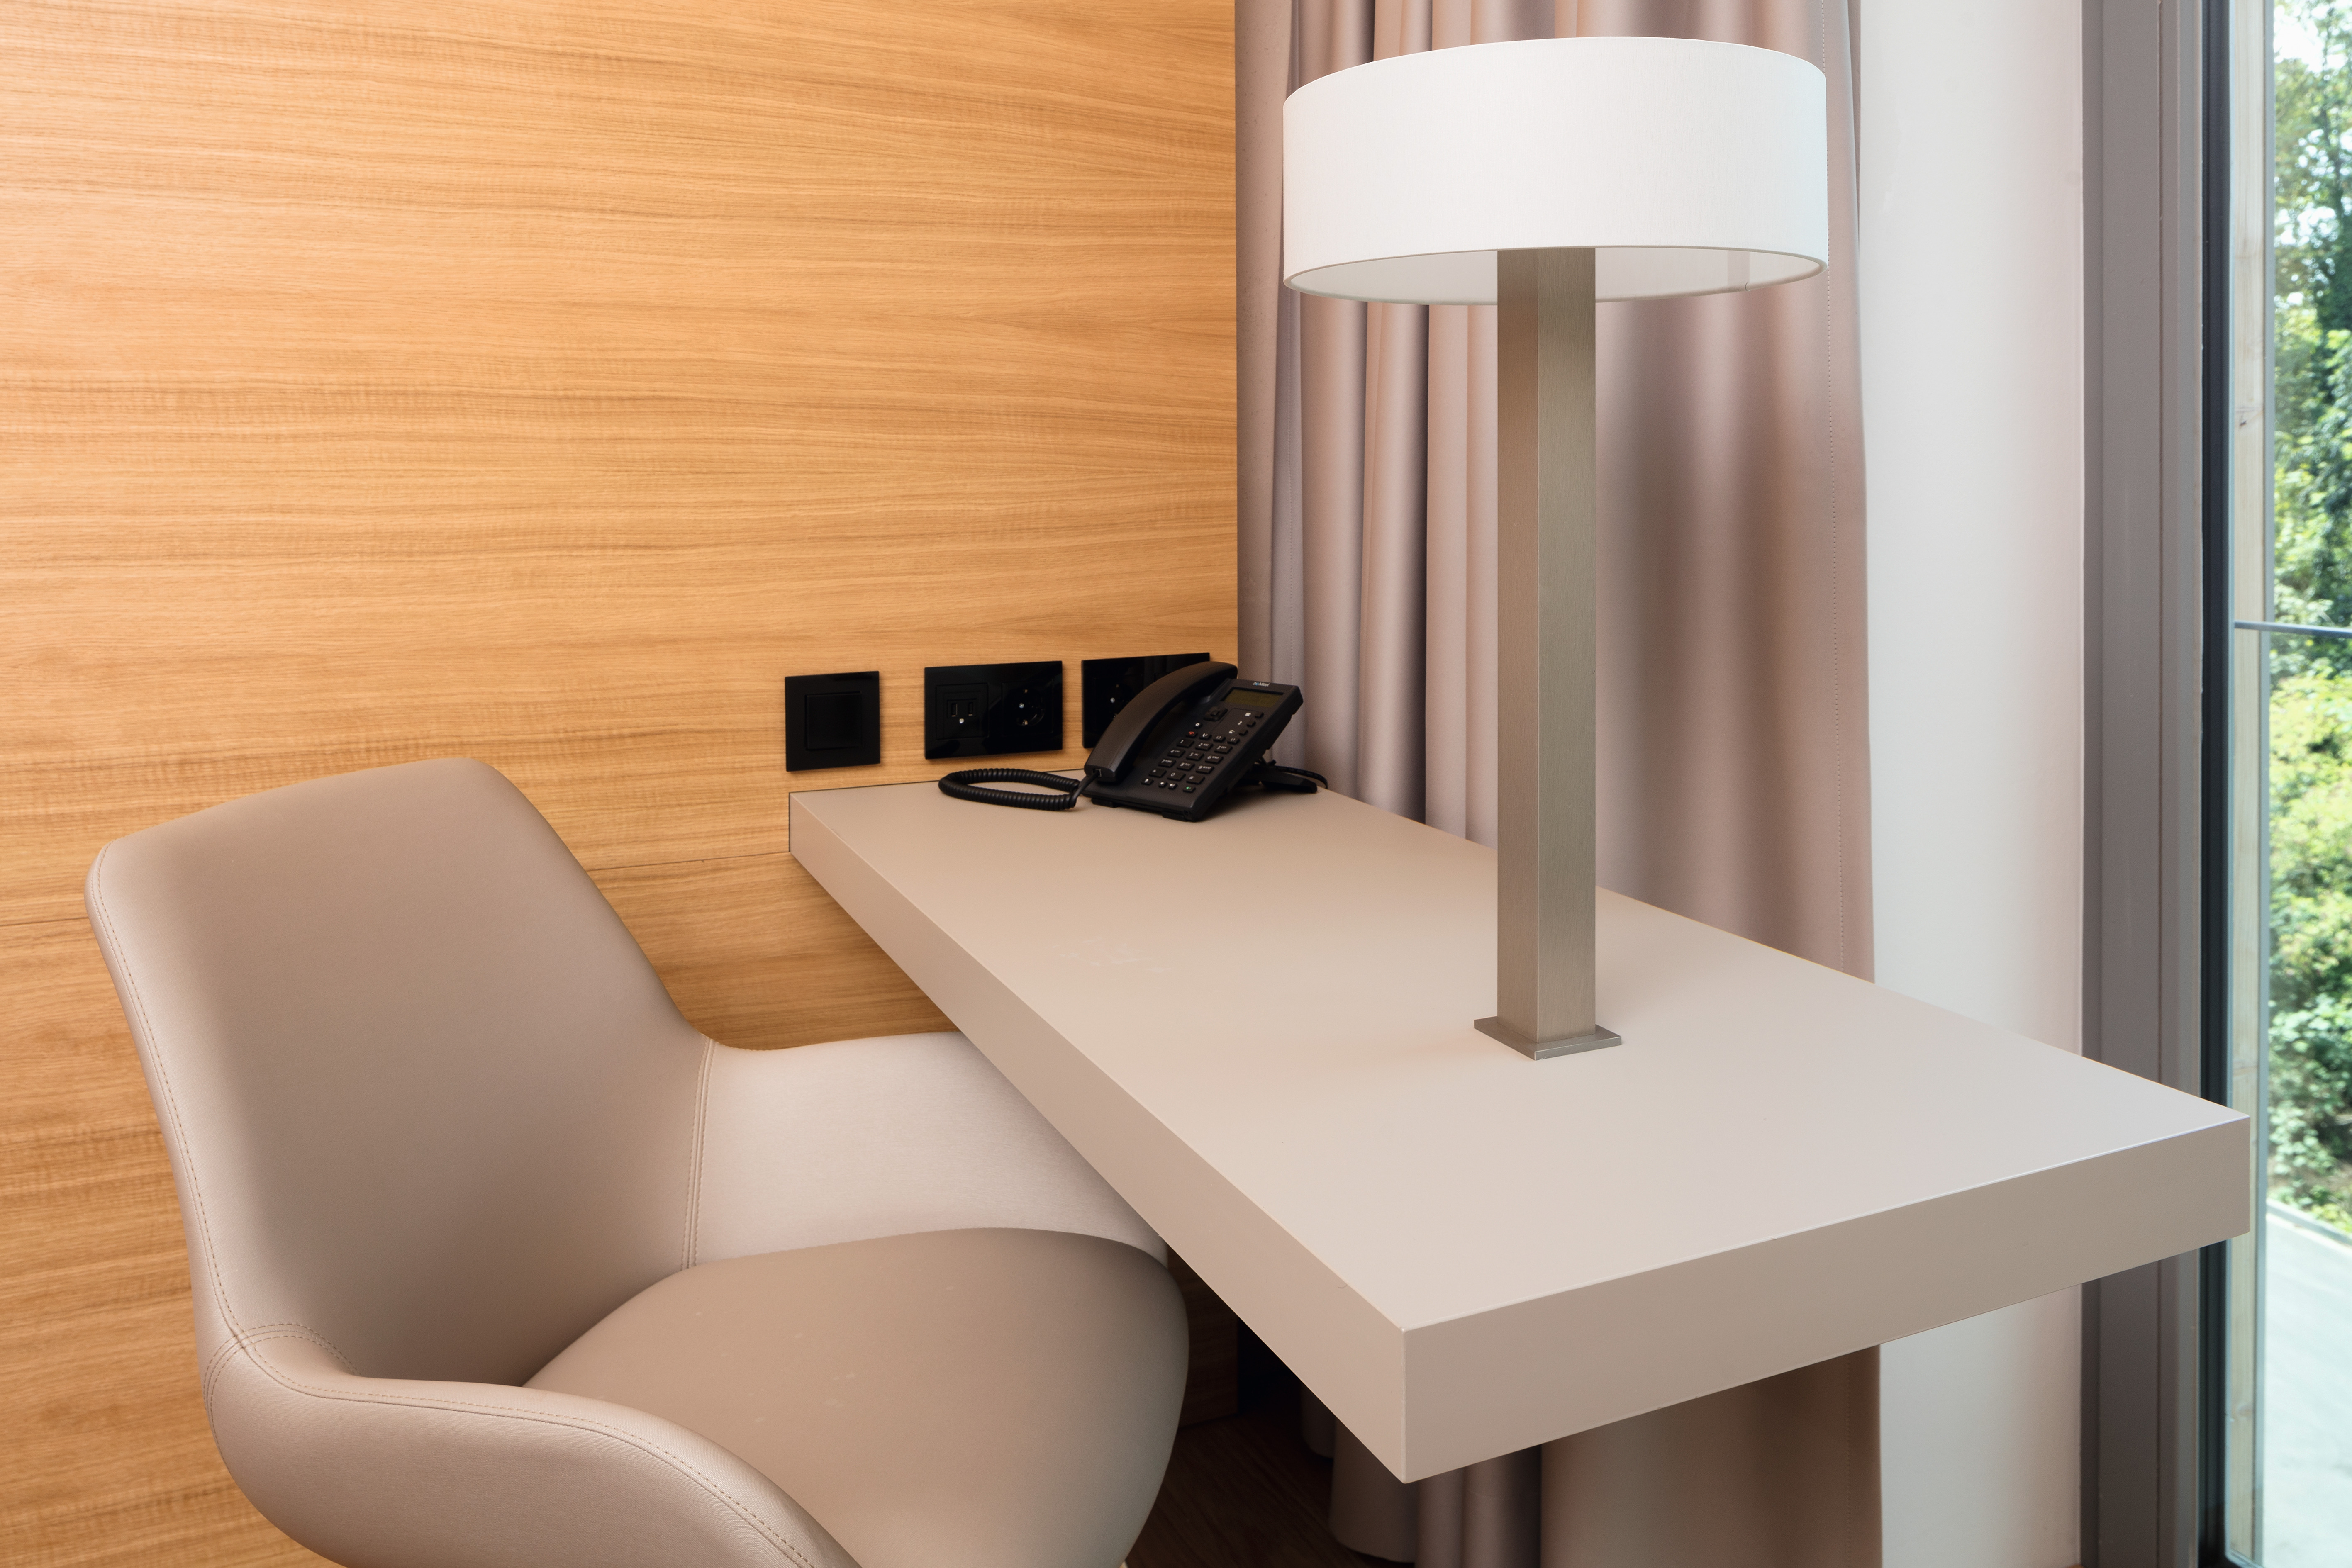 Suprafața biroului a fost realizată cu laminatul rezistent PerfectSense Topmatt.